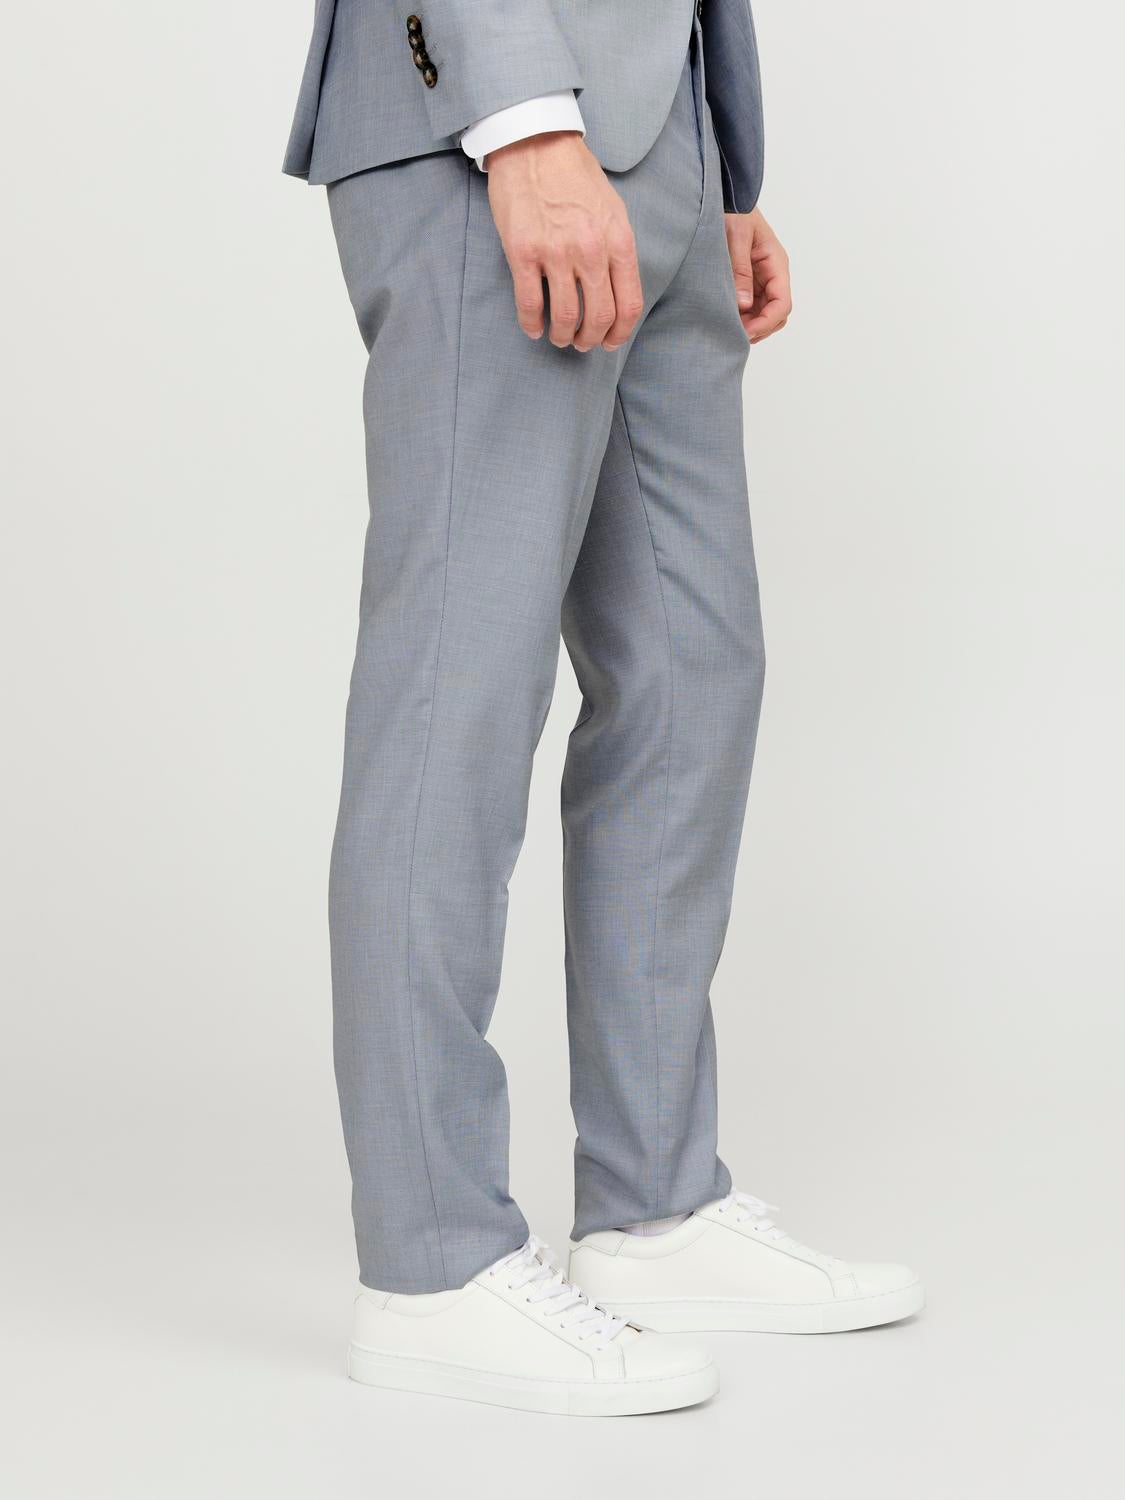 Van Heusen Light Grey Slim Fit Self Pattern Trousers